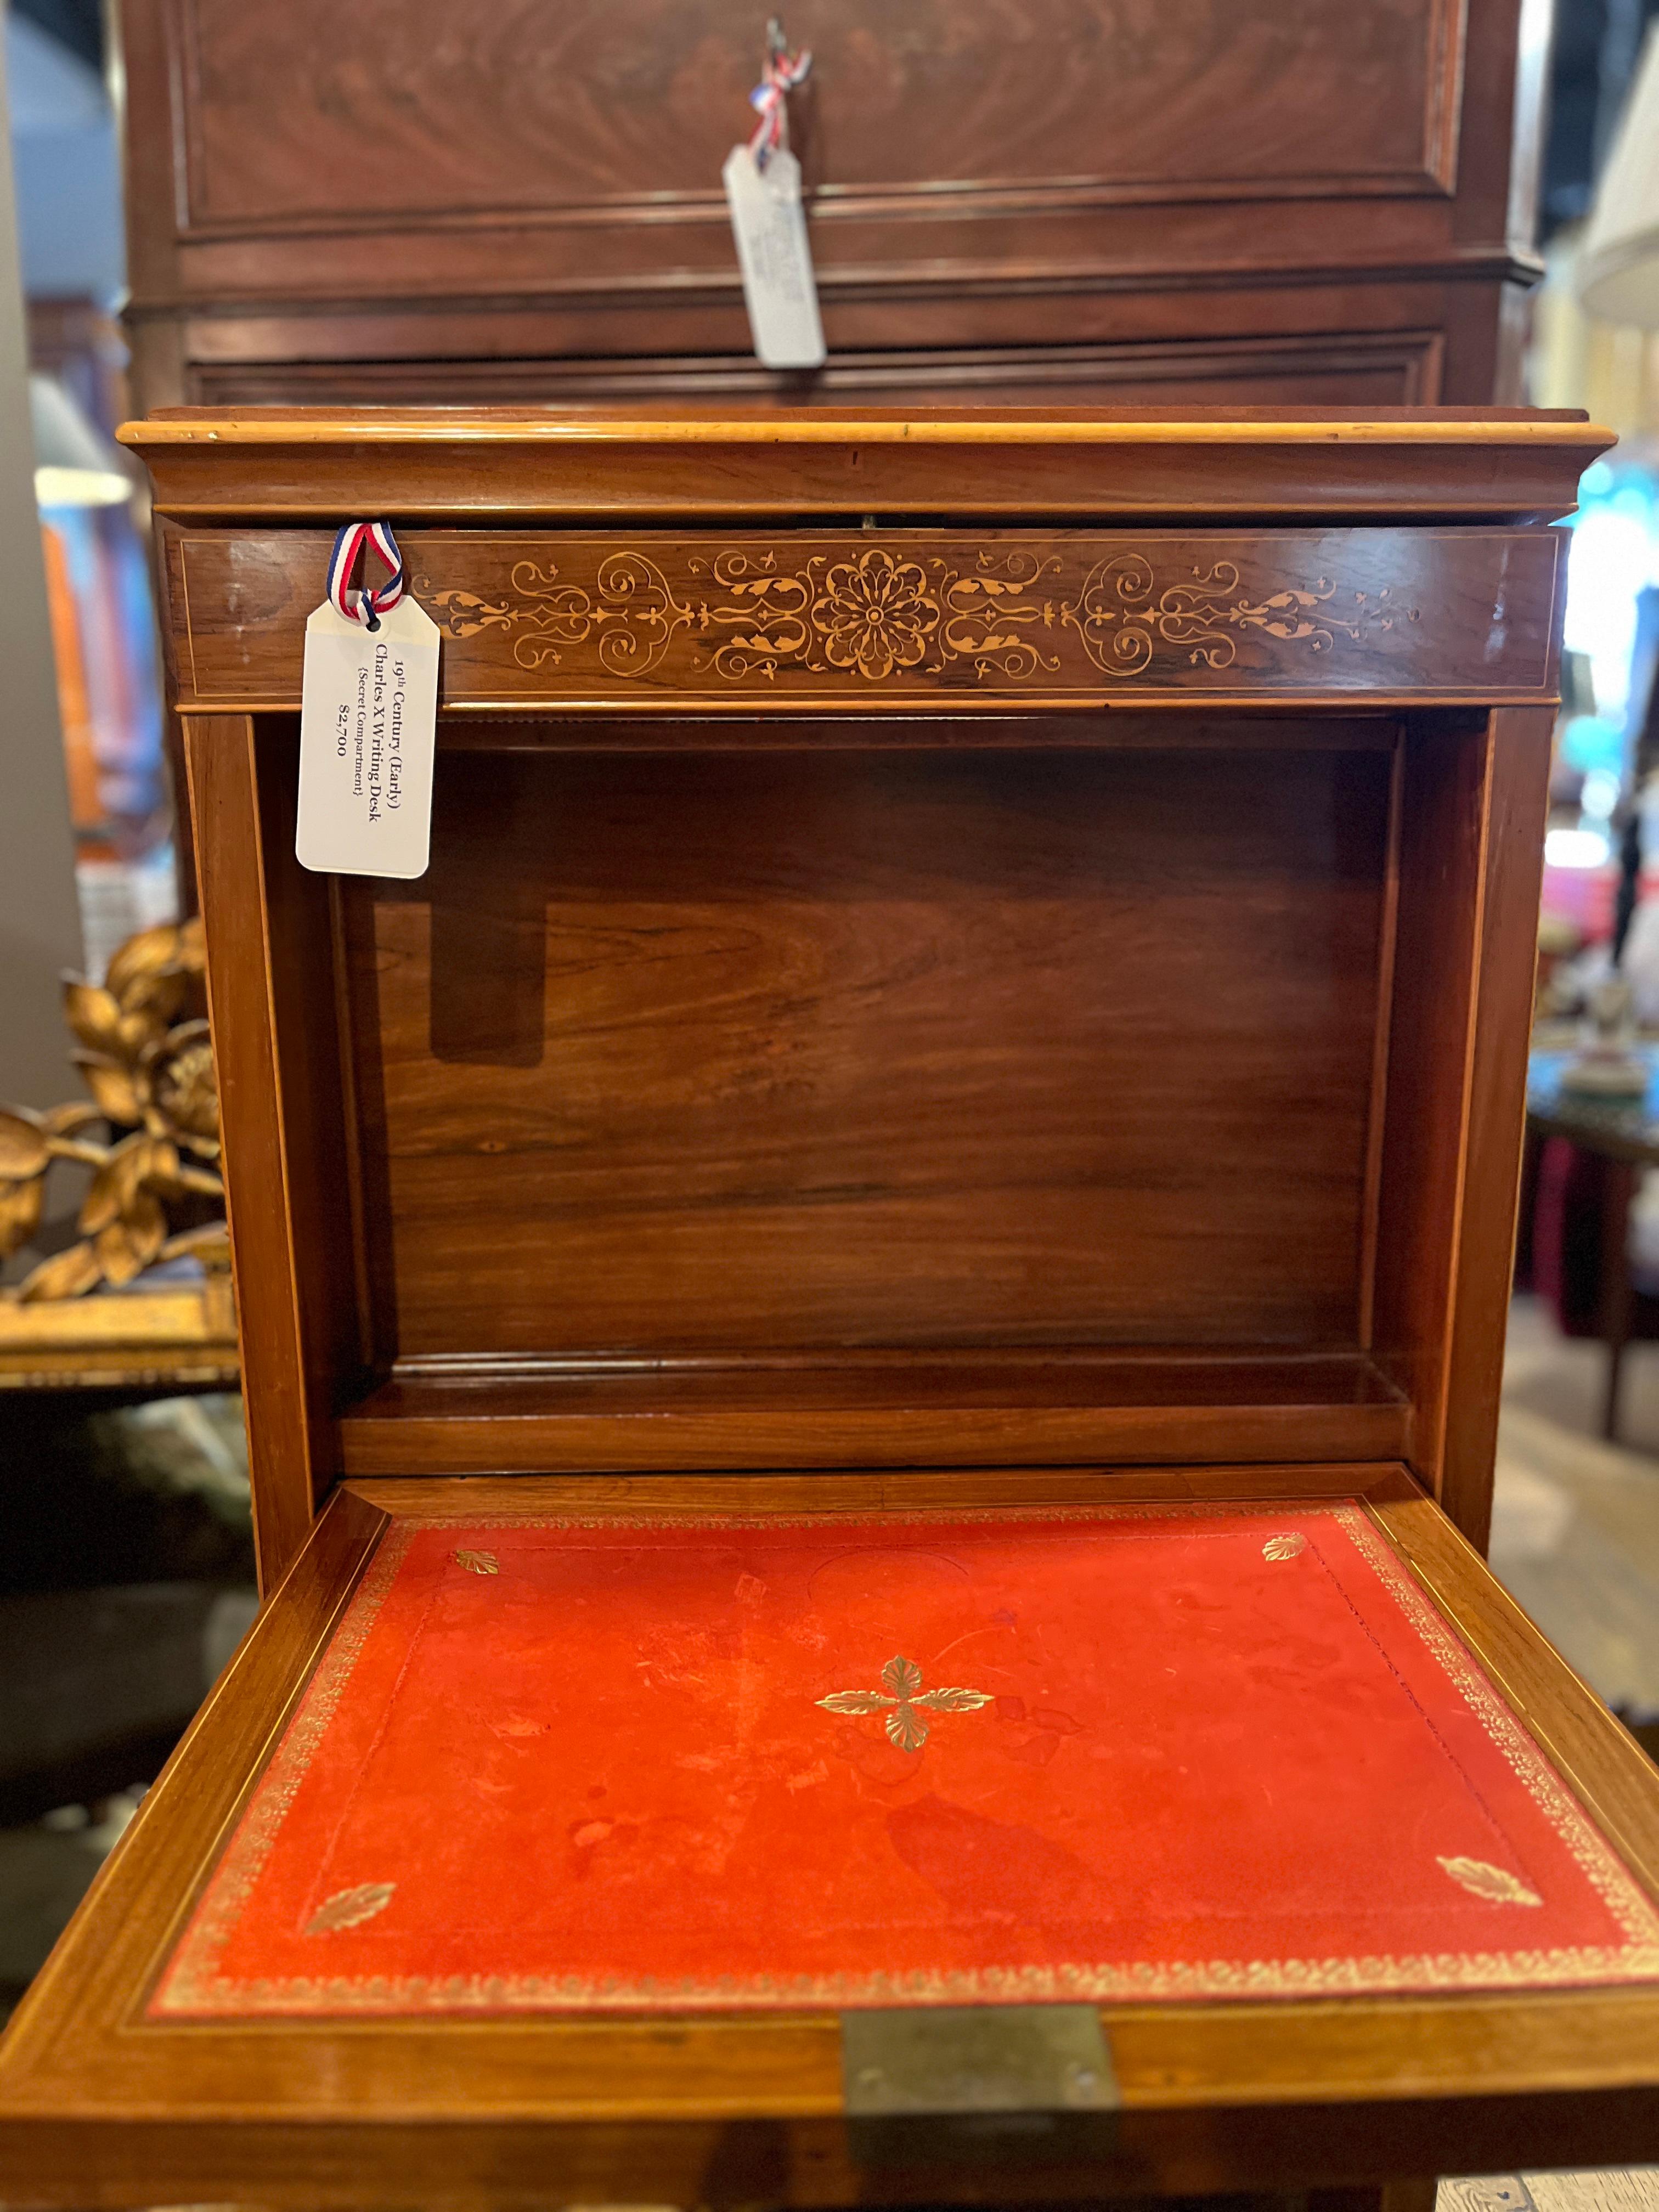 antique desk with secret compartments